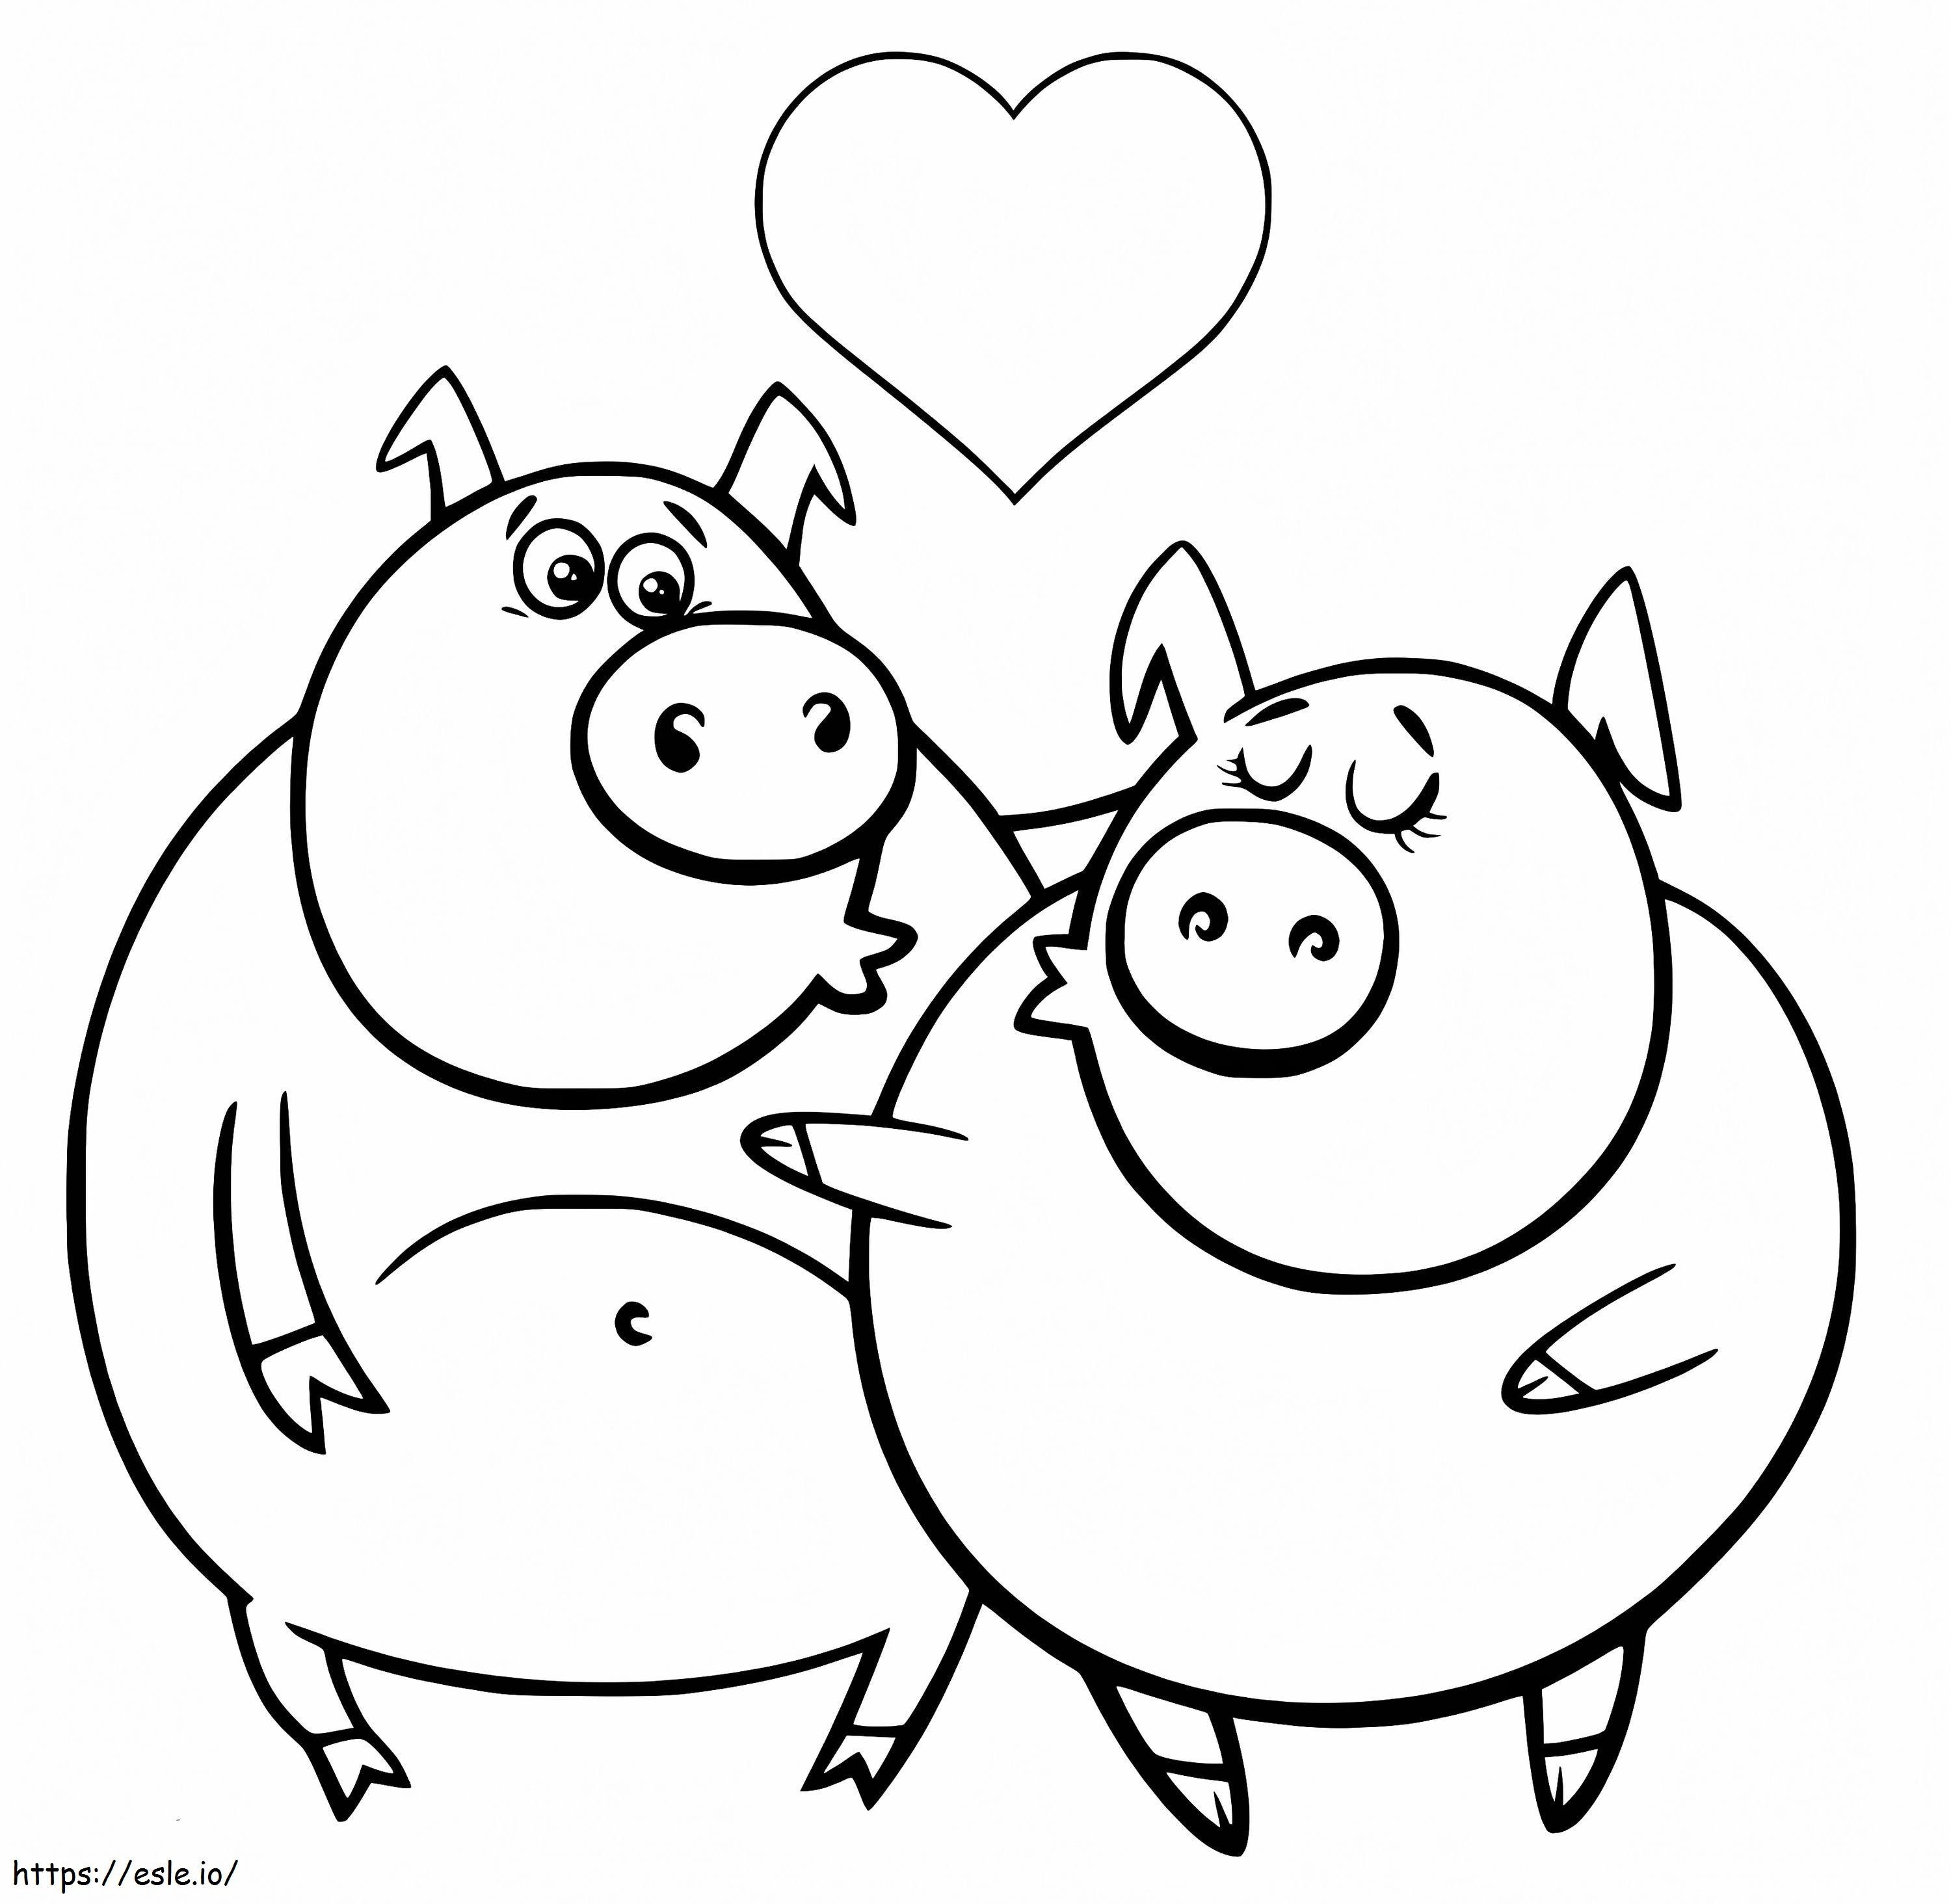 Coloriage Couple de cochons à imprimer dessin